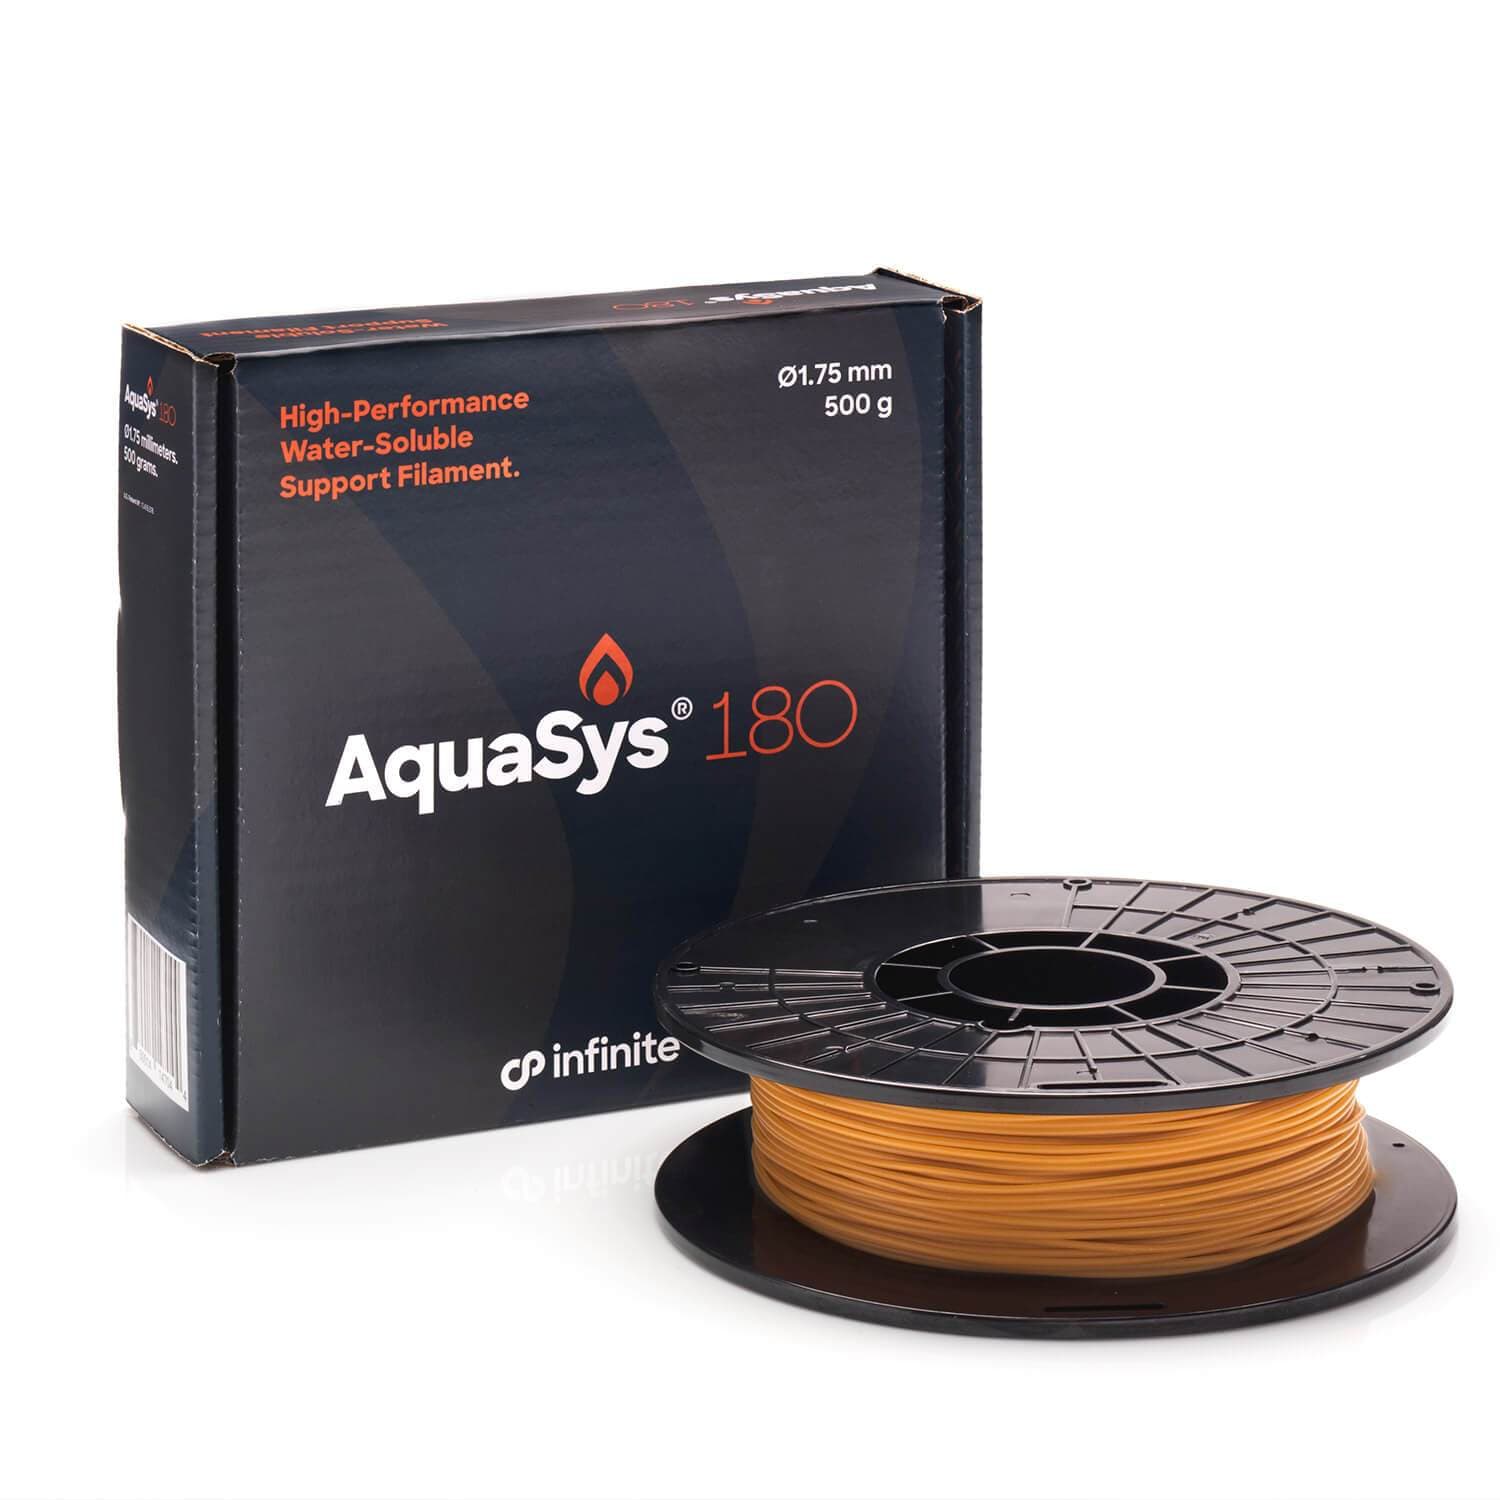 AquaSys 180 500g Infinite Material Solutions Filament